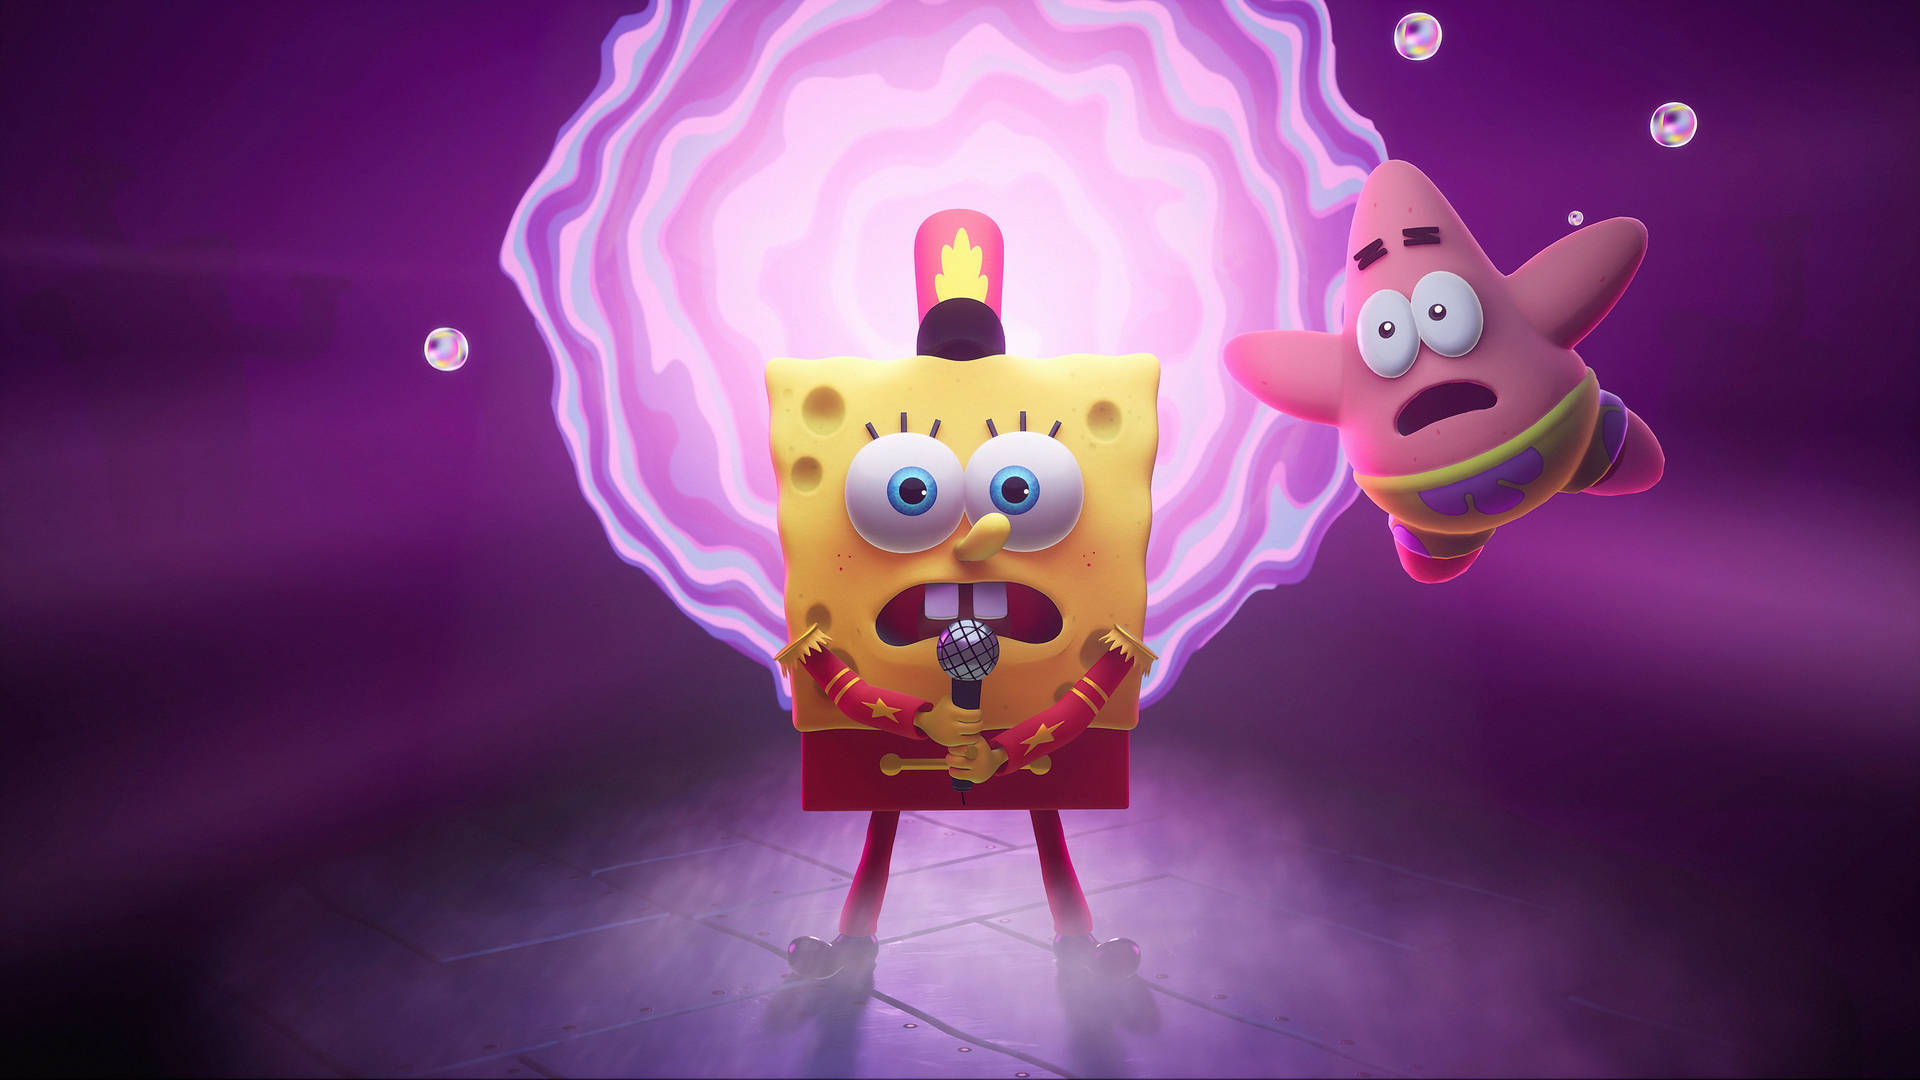 Hãy tải hình nền Spongebob và Patrick miễn phí của chúng tôi với hơn 100 hình nền Spongebob đa dạng để lựa chọn. Khám phá những hình nền đầy màu sắc và hài hước, tạo ra một màn hình điện thoại độc đáo và tuyệt vời theo phong cách của riêng bạn.